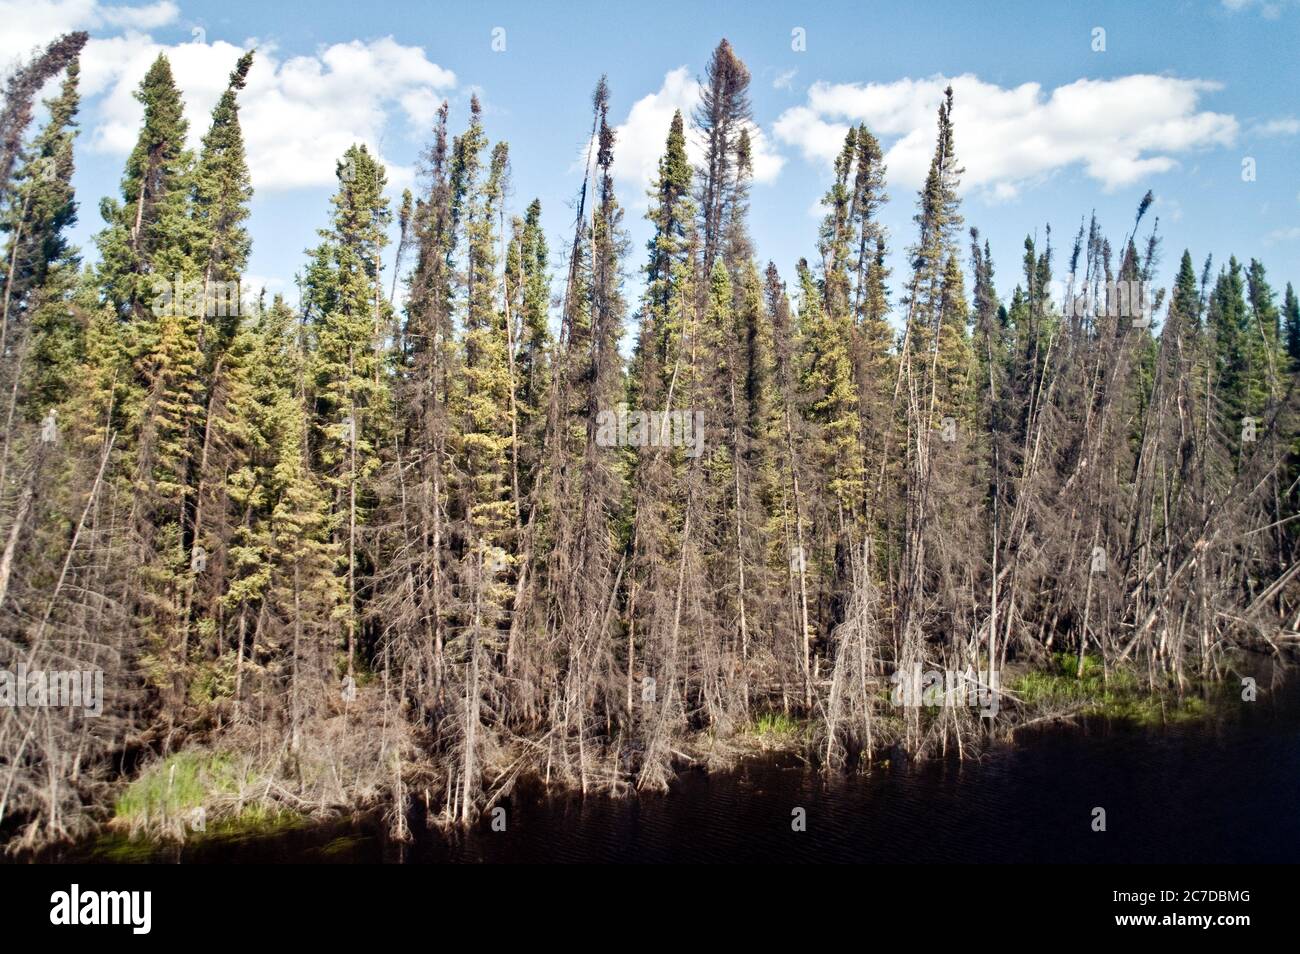 Zone umide, boschive e foreste di conifere nella remota foresta boreale nei pressi del Pas, Manitoba settentrionale, Canada. Foto Stock